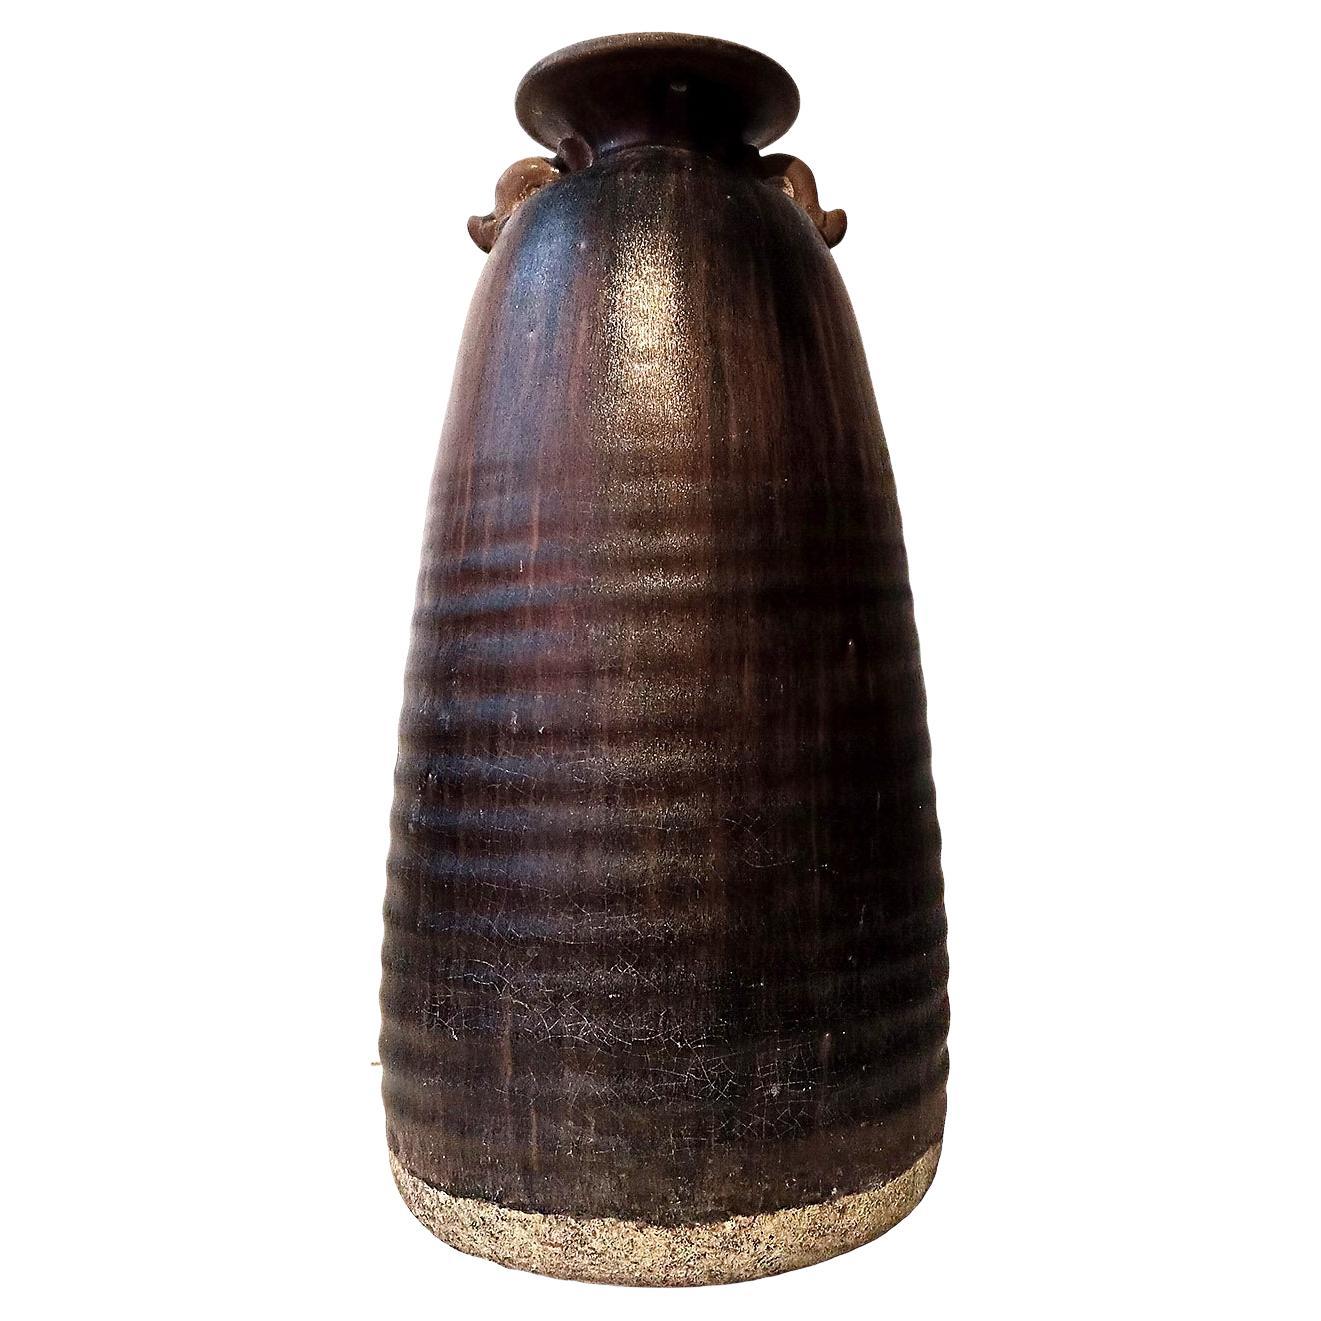 Grand vase thaïlandais en céramique à glaçure marbrée Brown, avec anses Looping